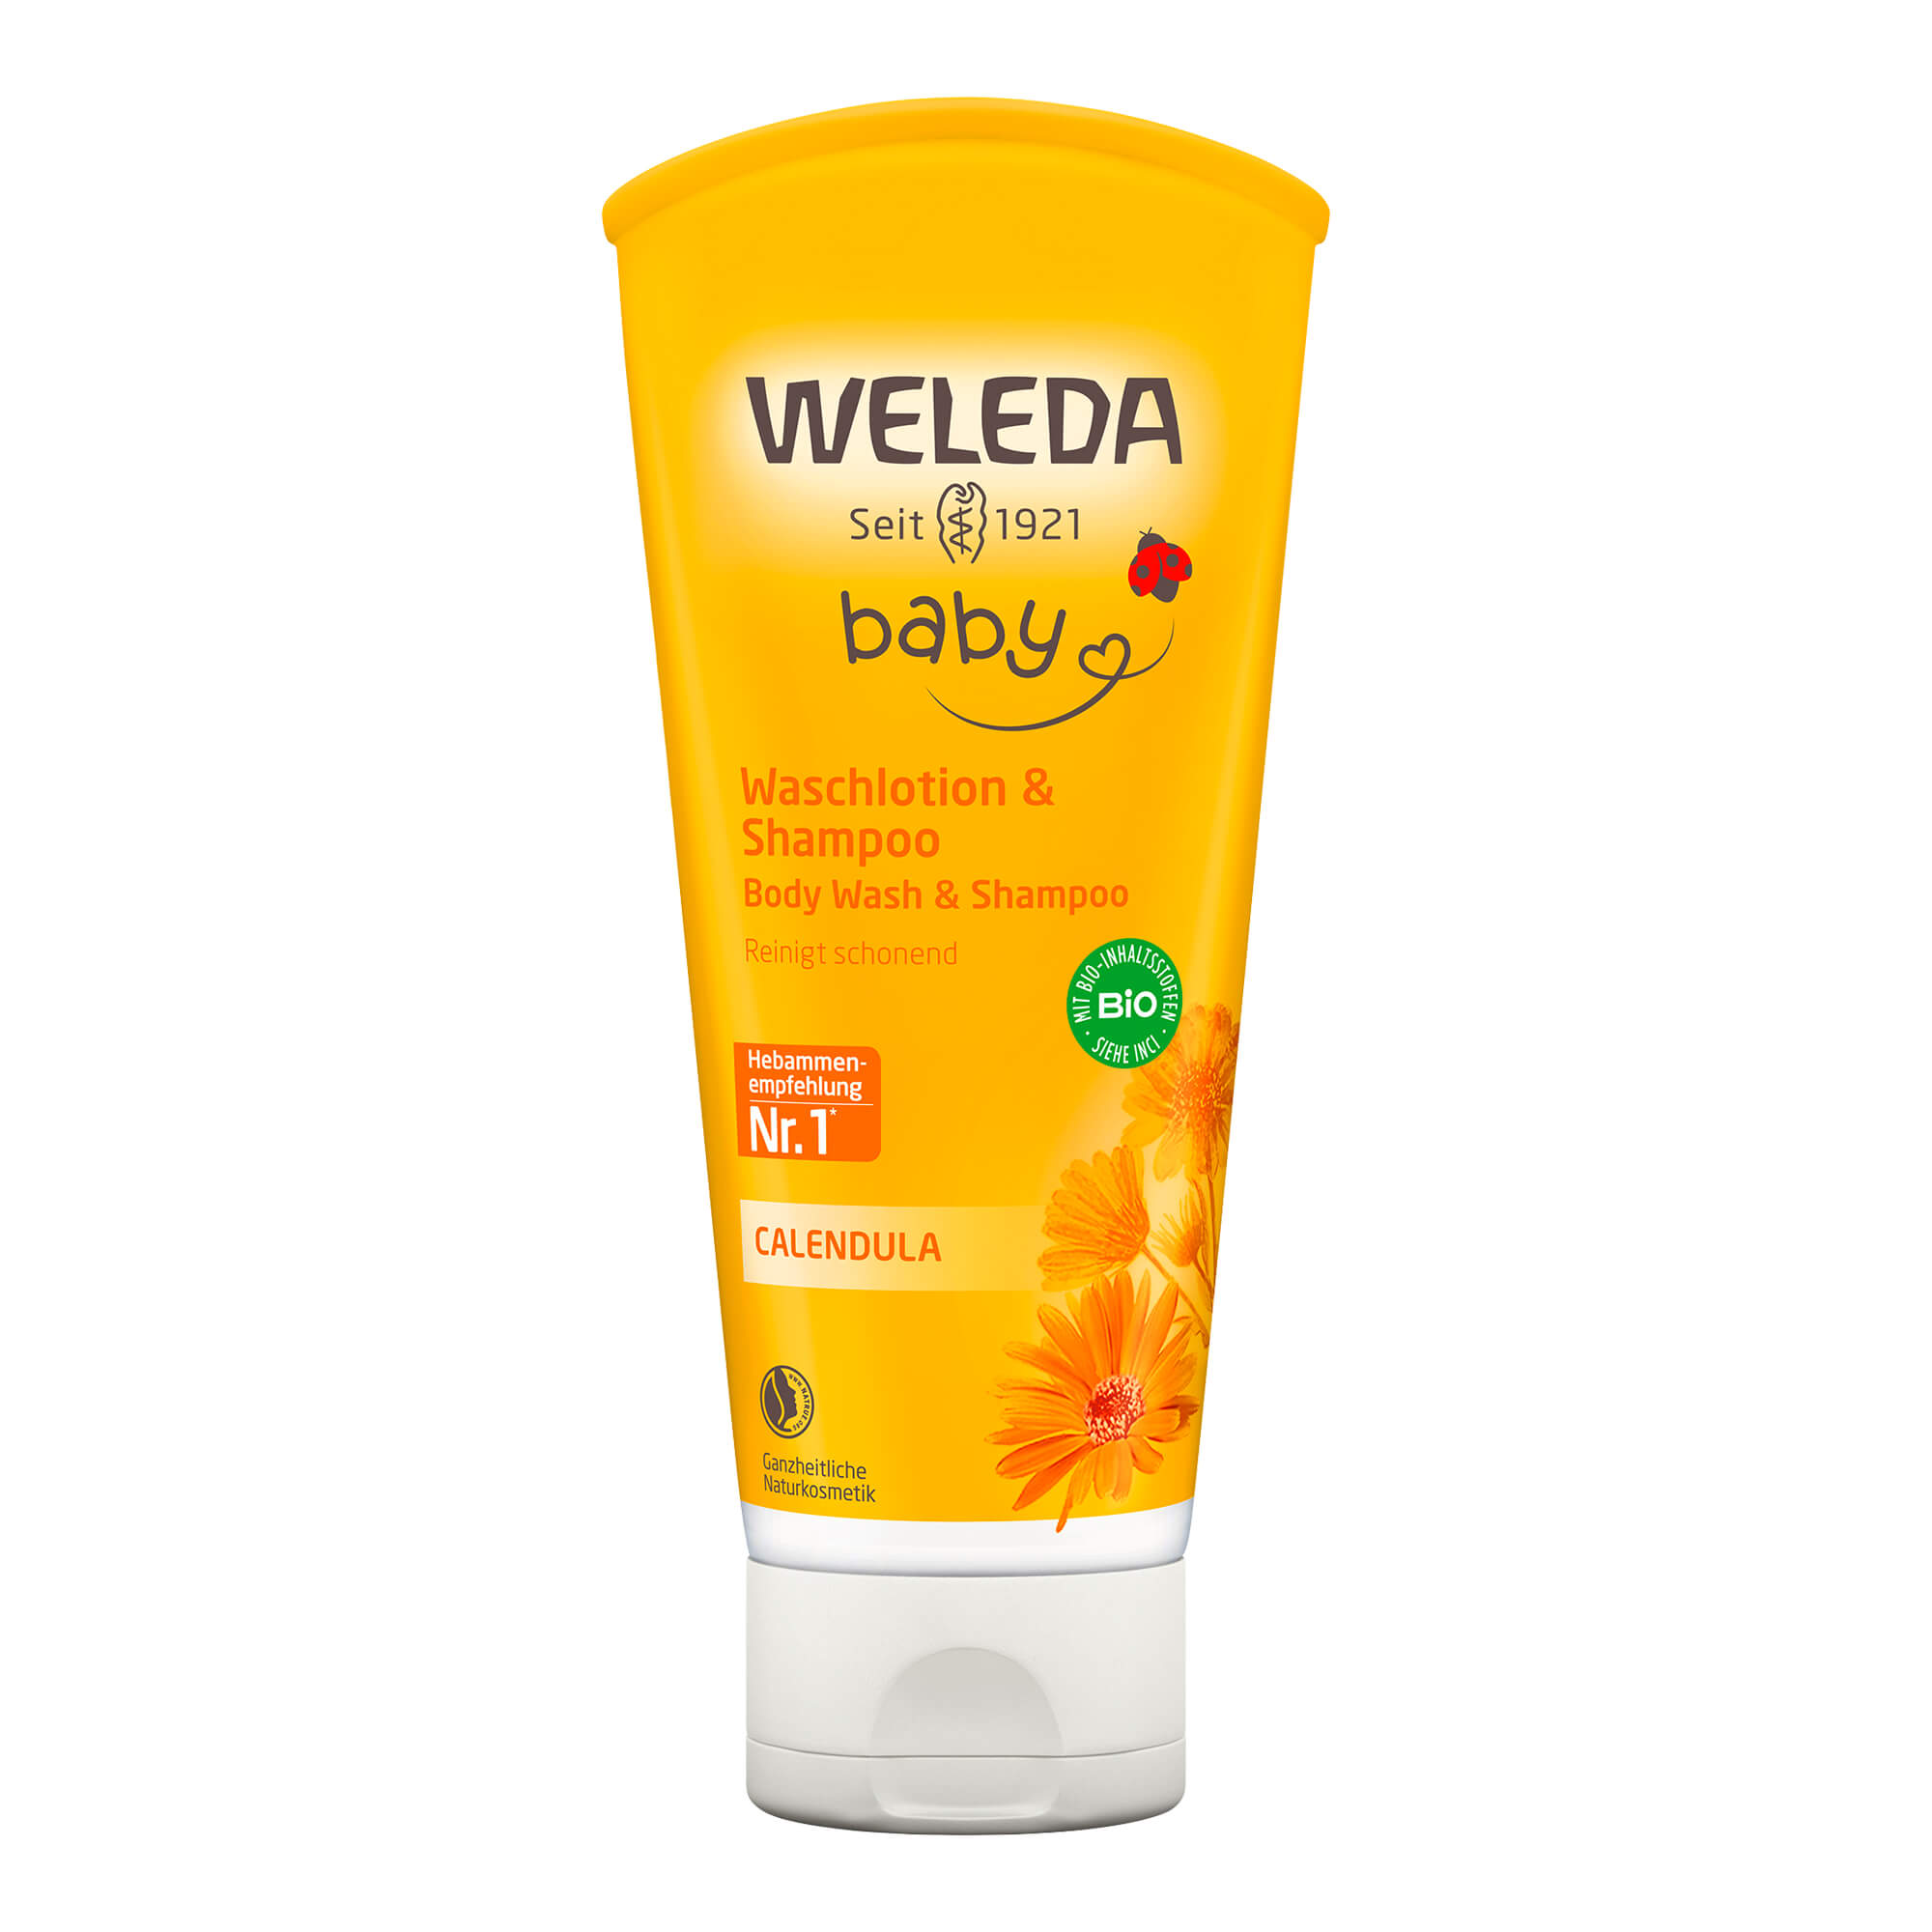 Naturkosmetik Cremedusche & Shampoo reinigt Babyhaut & -haar besonders schonend, auch für hochsensible Haut.